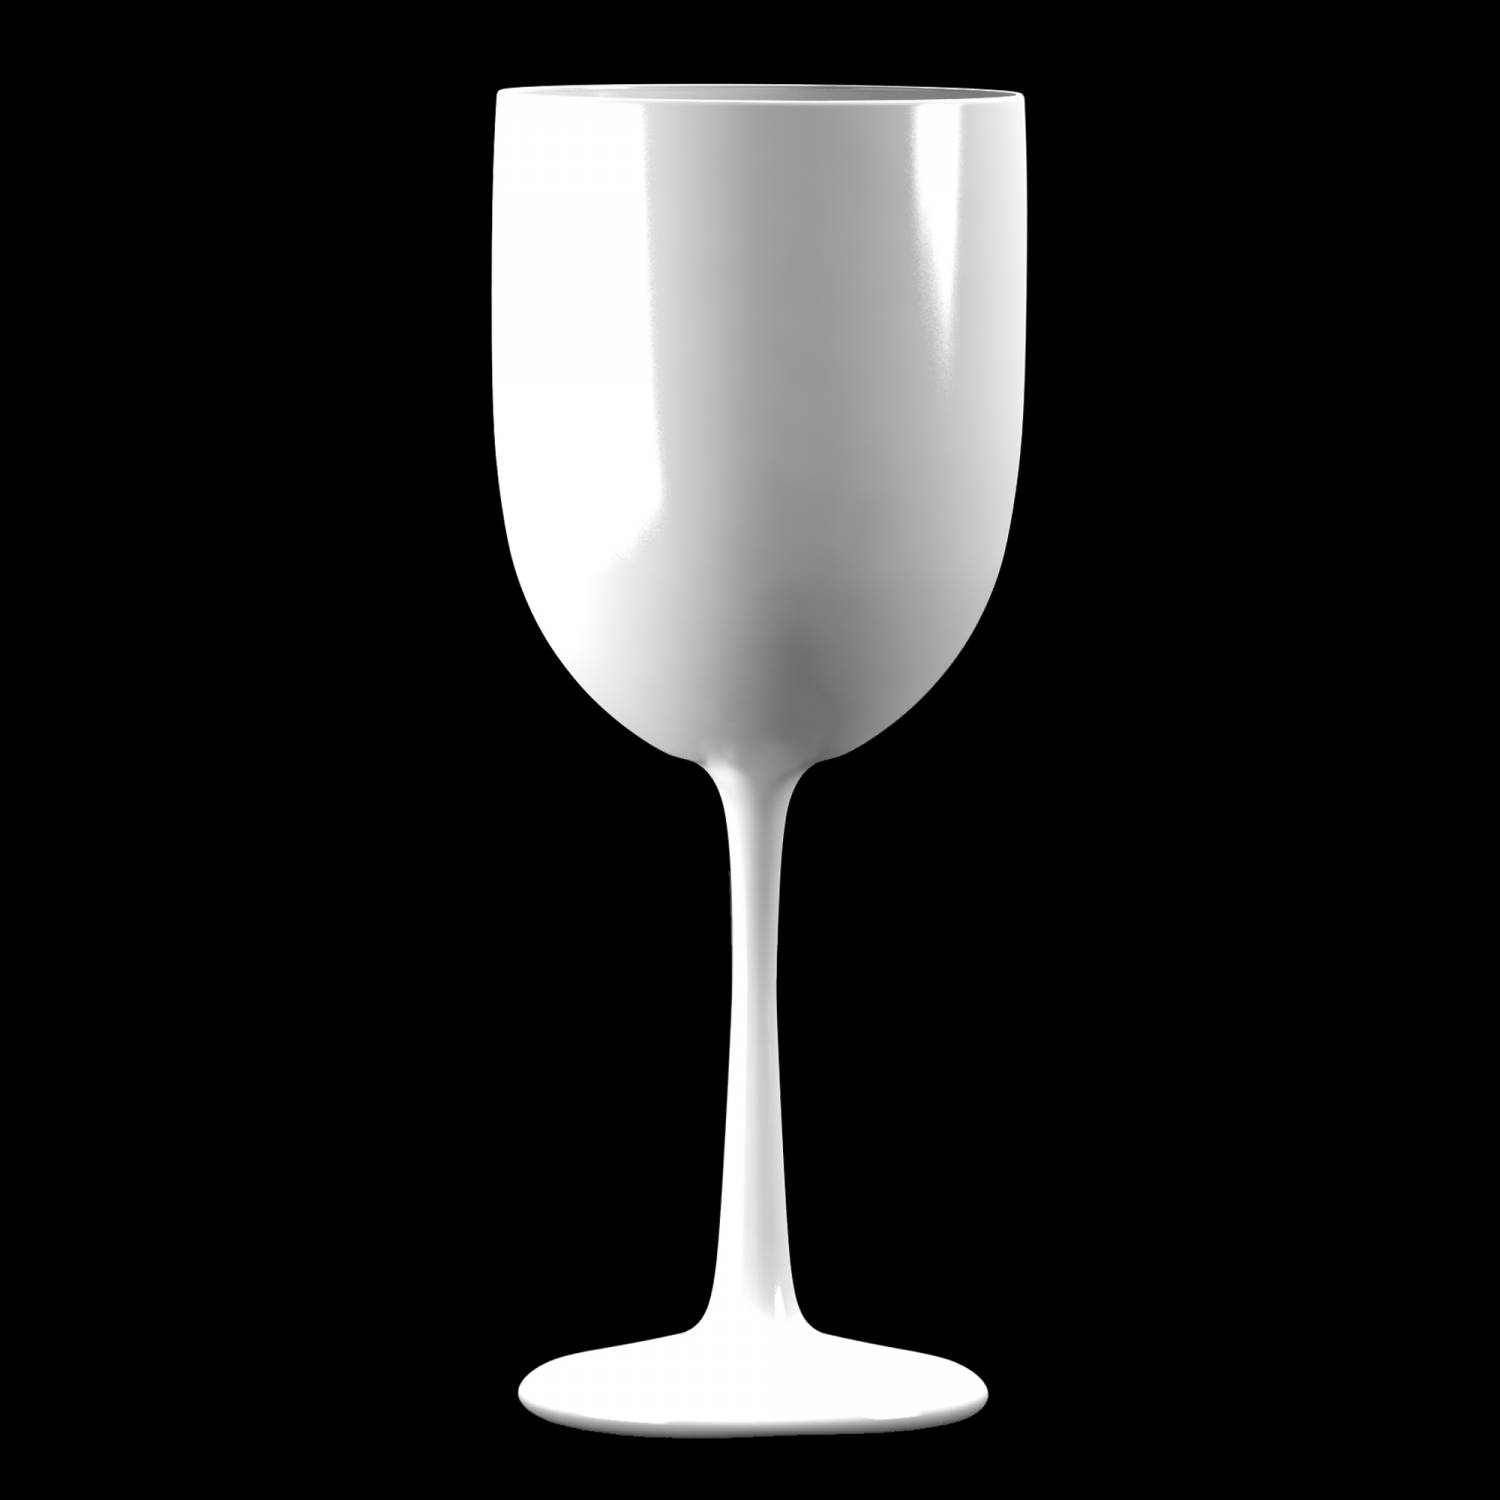 heroïne Oppositie Geneigd zijn Kunststof wijnglas 48cl wit kopen? | De Horeca Bazaar